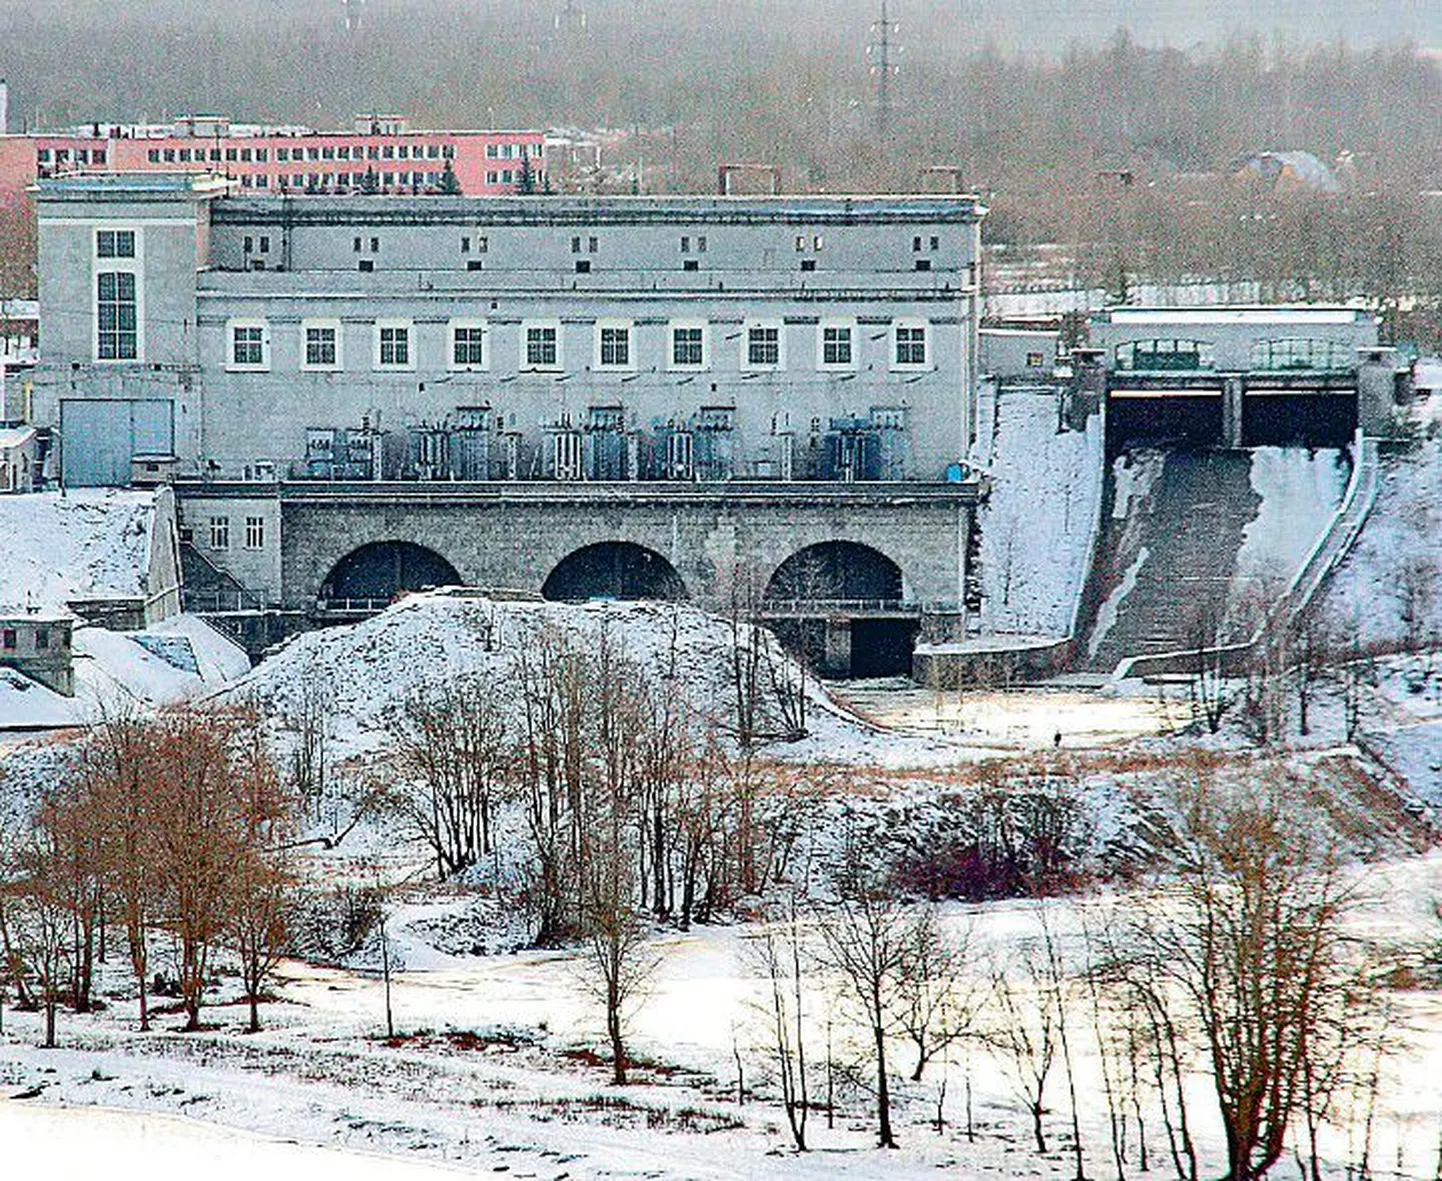 Плотину Кулгу делит пополам граница. Фирма ТГК-1 через суд требует себе половину плотины с эстонской стороны.